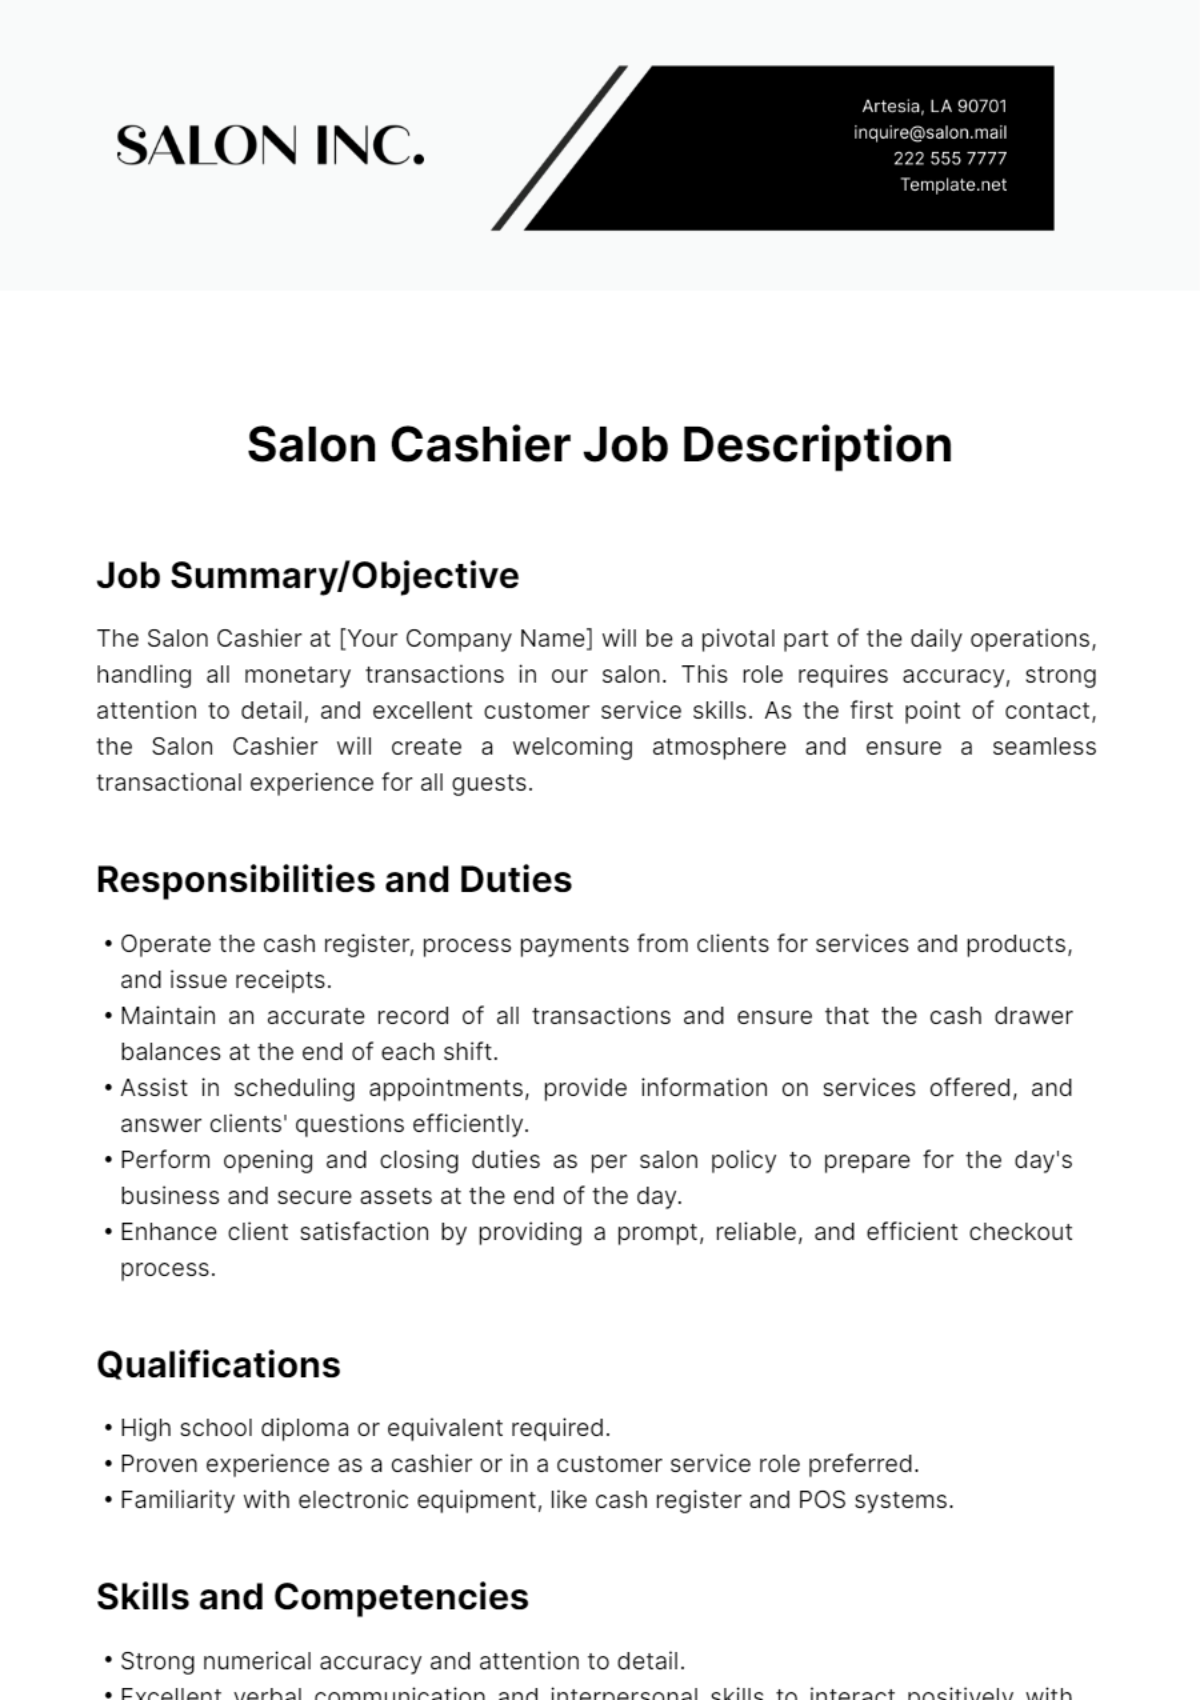 Free Salon Cashier Job Description Template